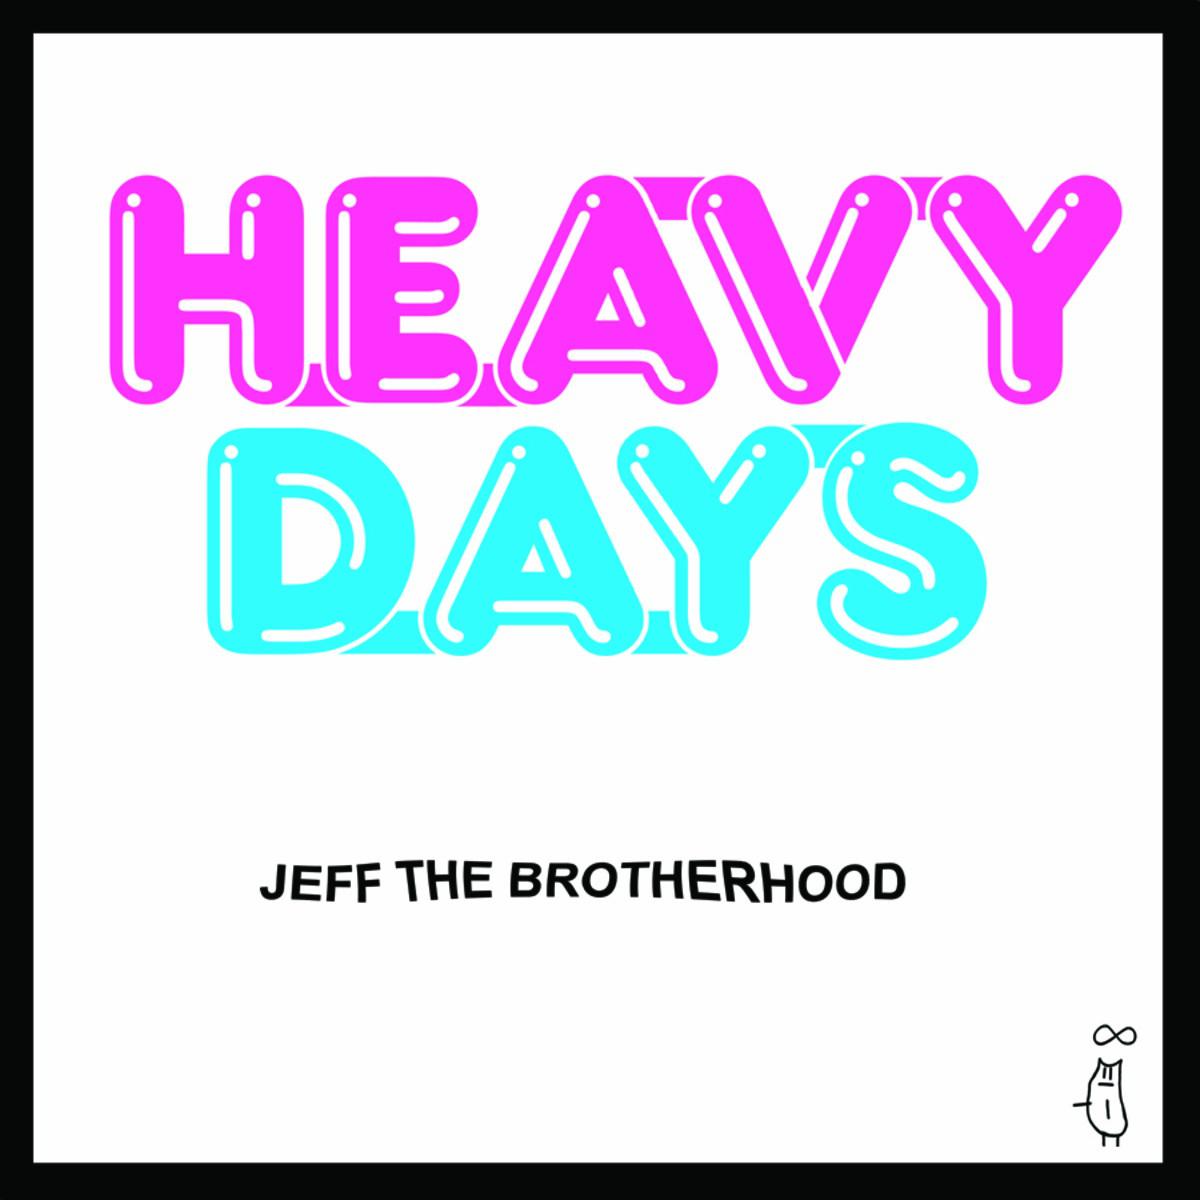 Jeff the Brotherhood - Growing